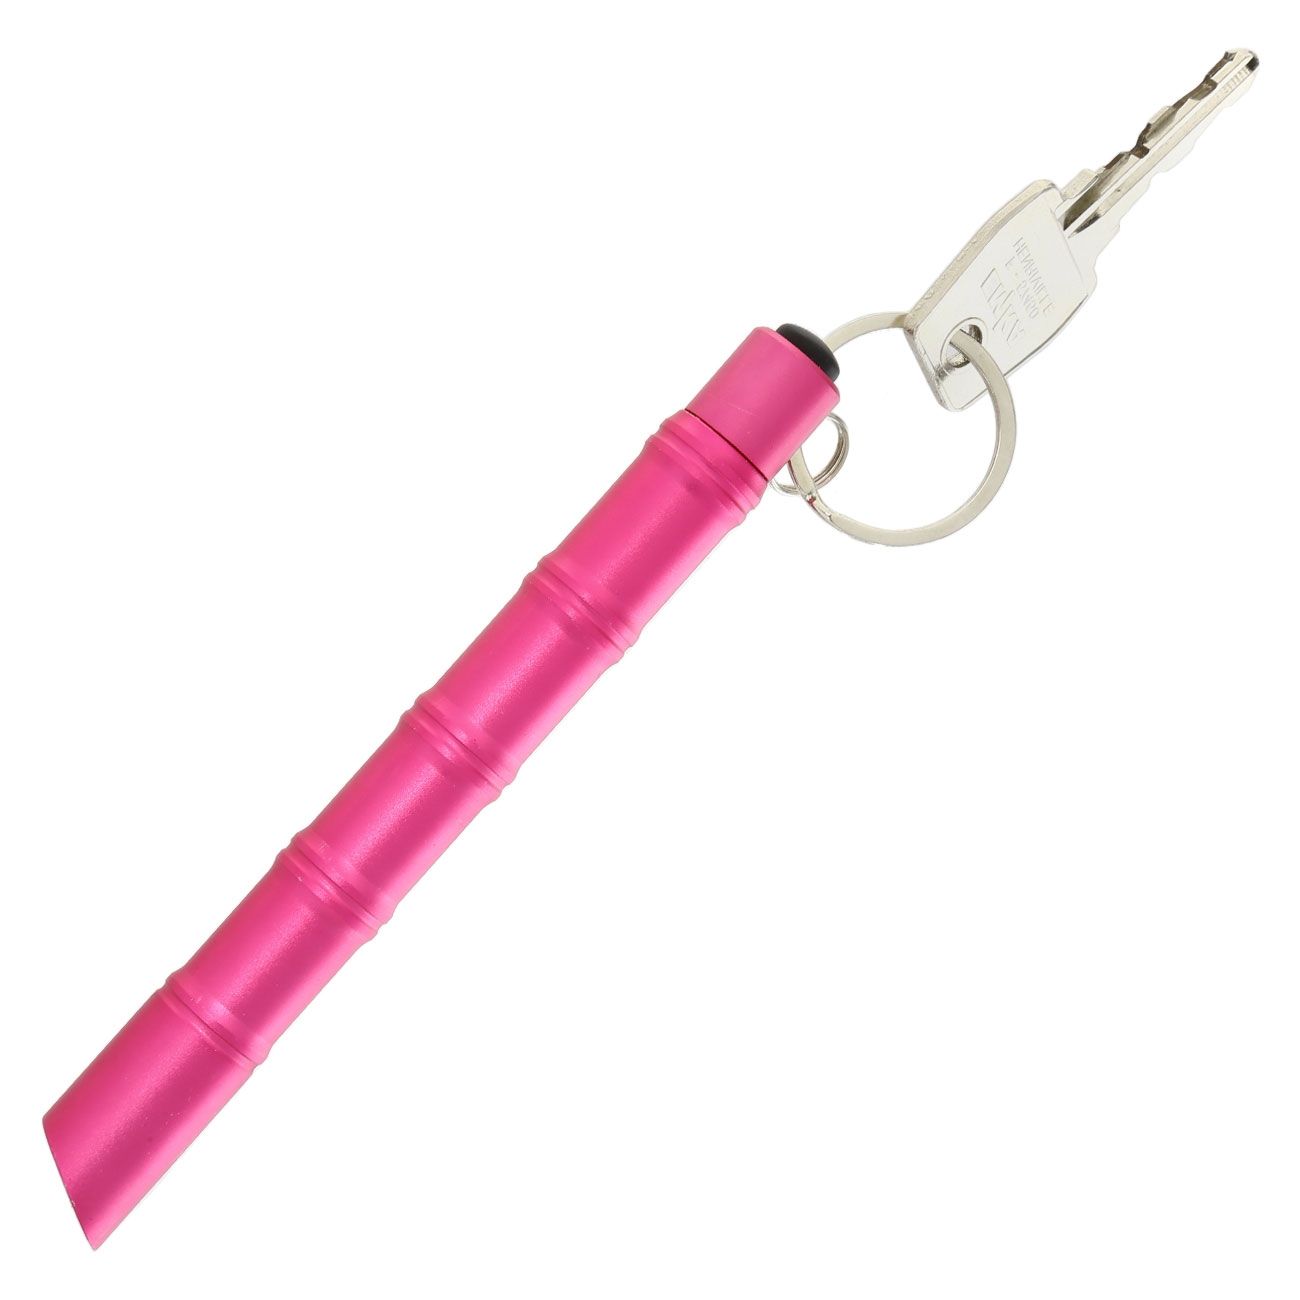 Kubotan Light Defender mit integrieter LED-Taschenlampe und Schlüsselring pink Bild 3